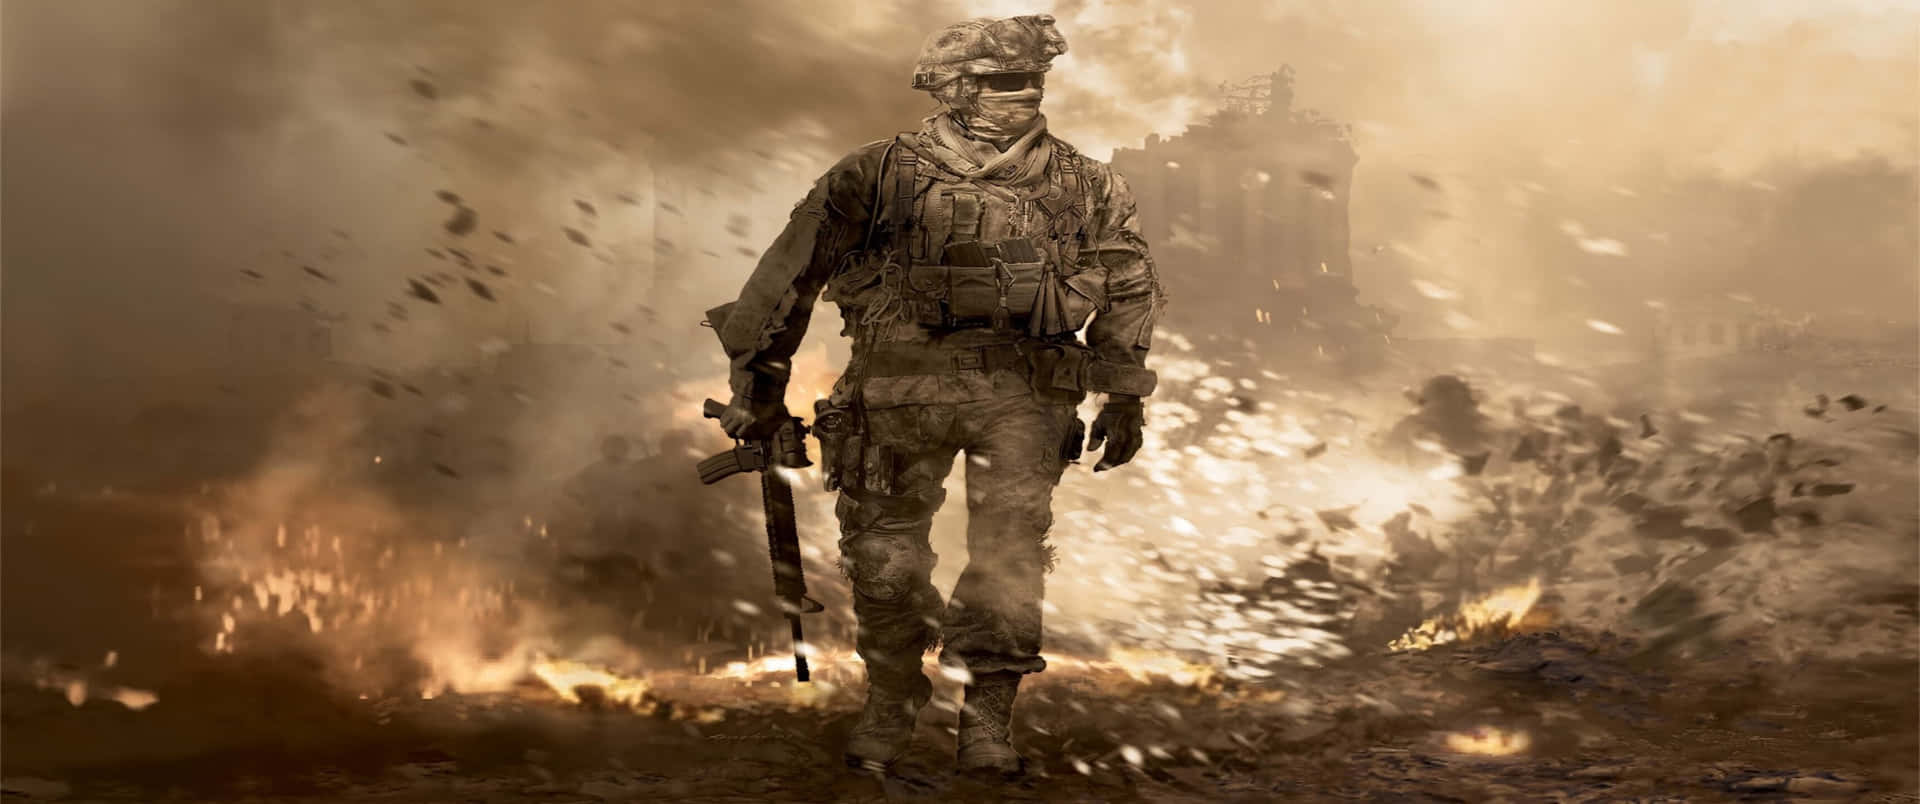 Escenade Explosión 3440x1440p Fondo De Pantalla De Call Of Duty Modern Warfare